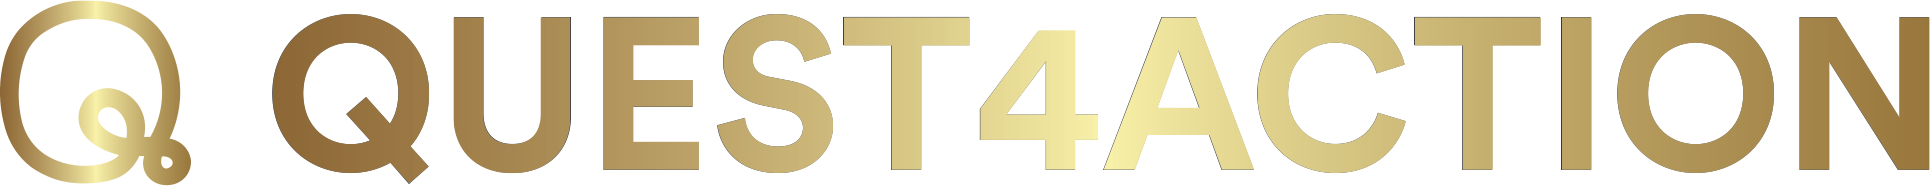 Quest4Action-Logo